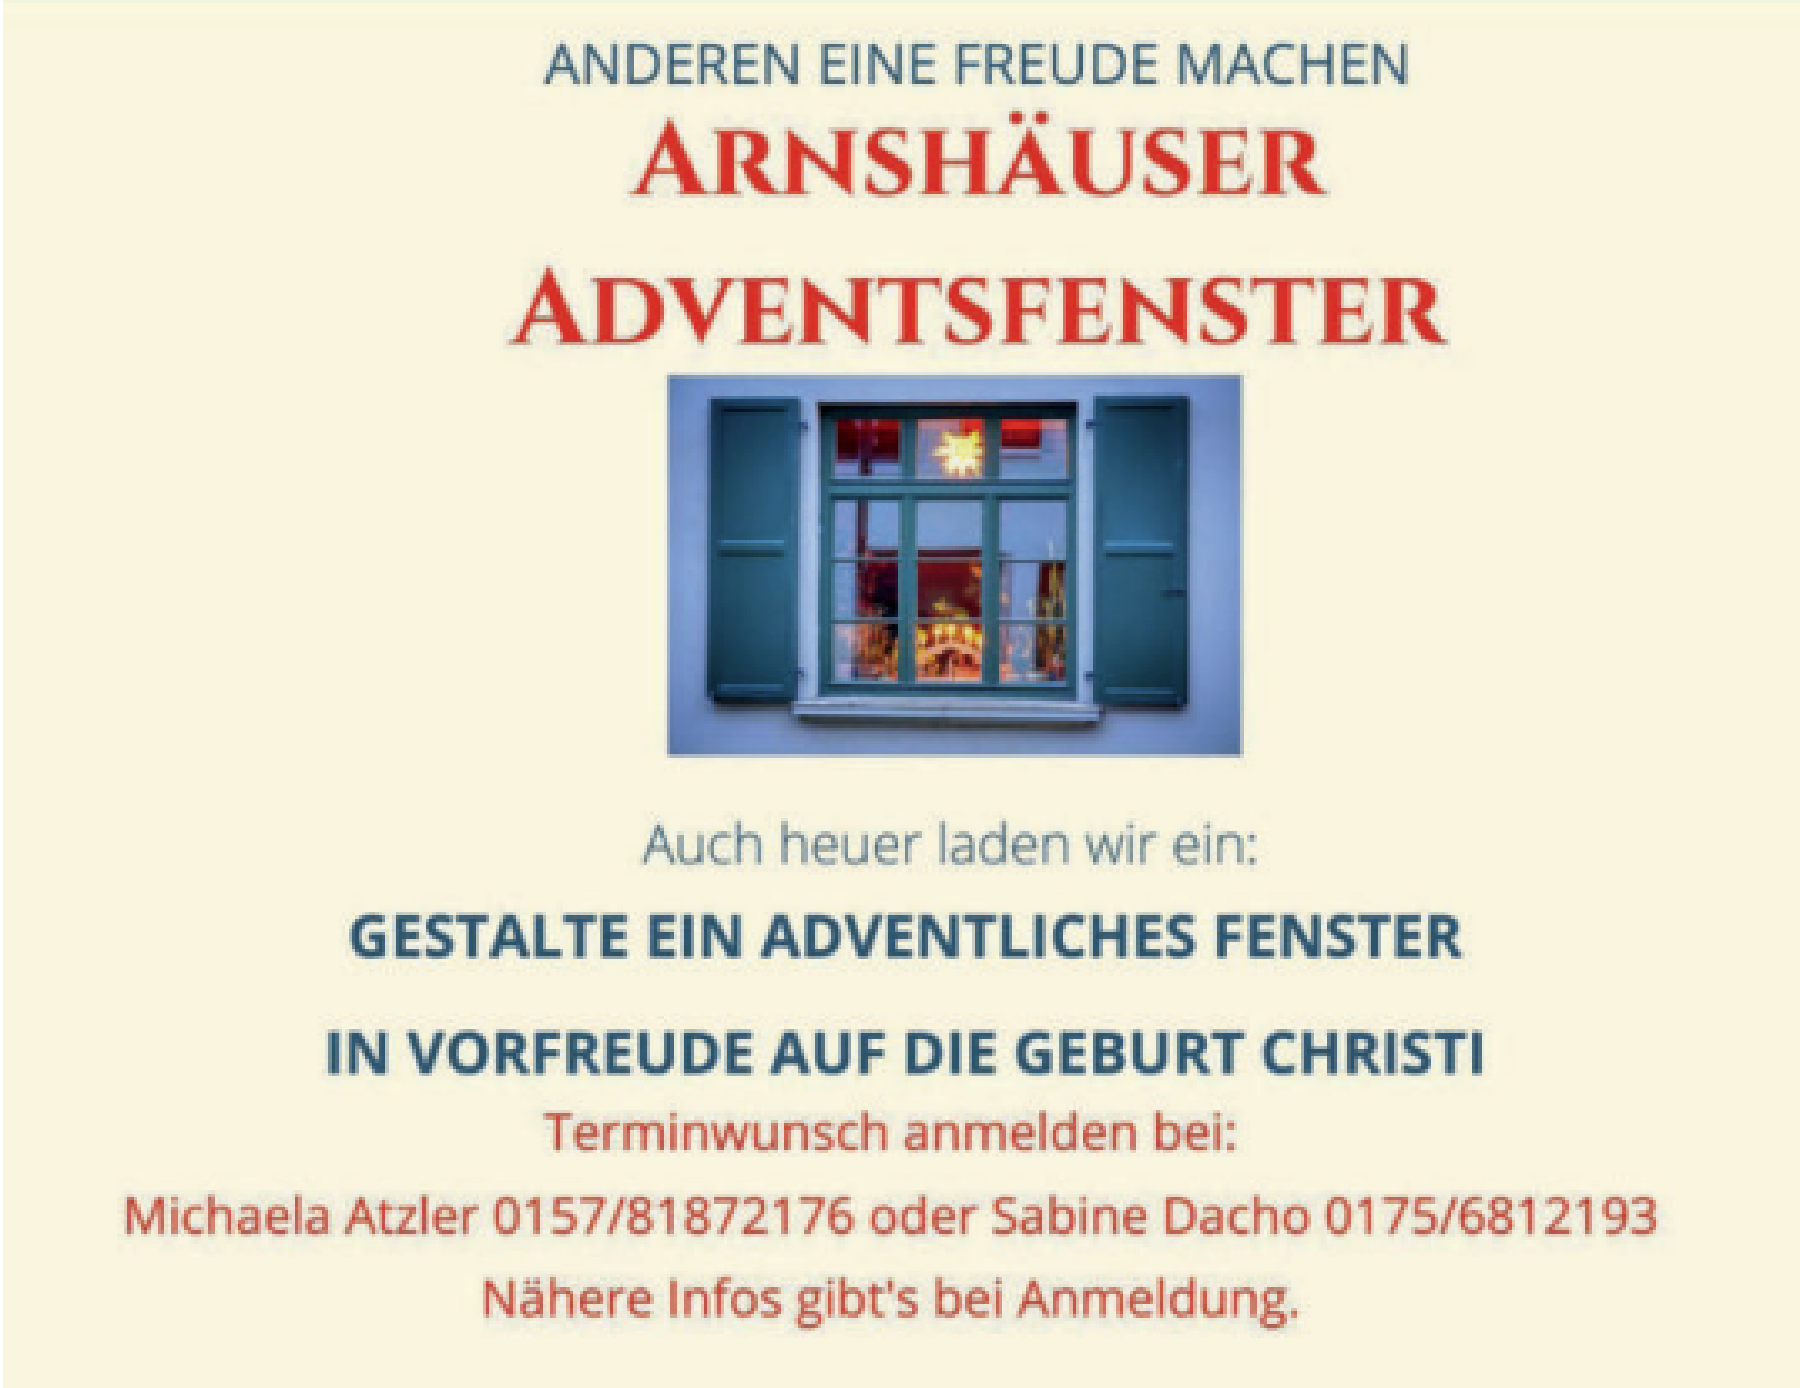 2022 11 25 Advent in Arnshausen